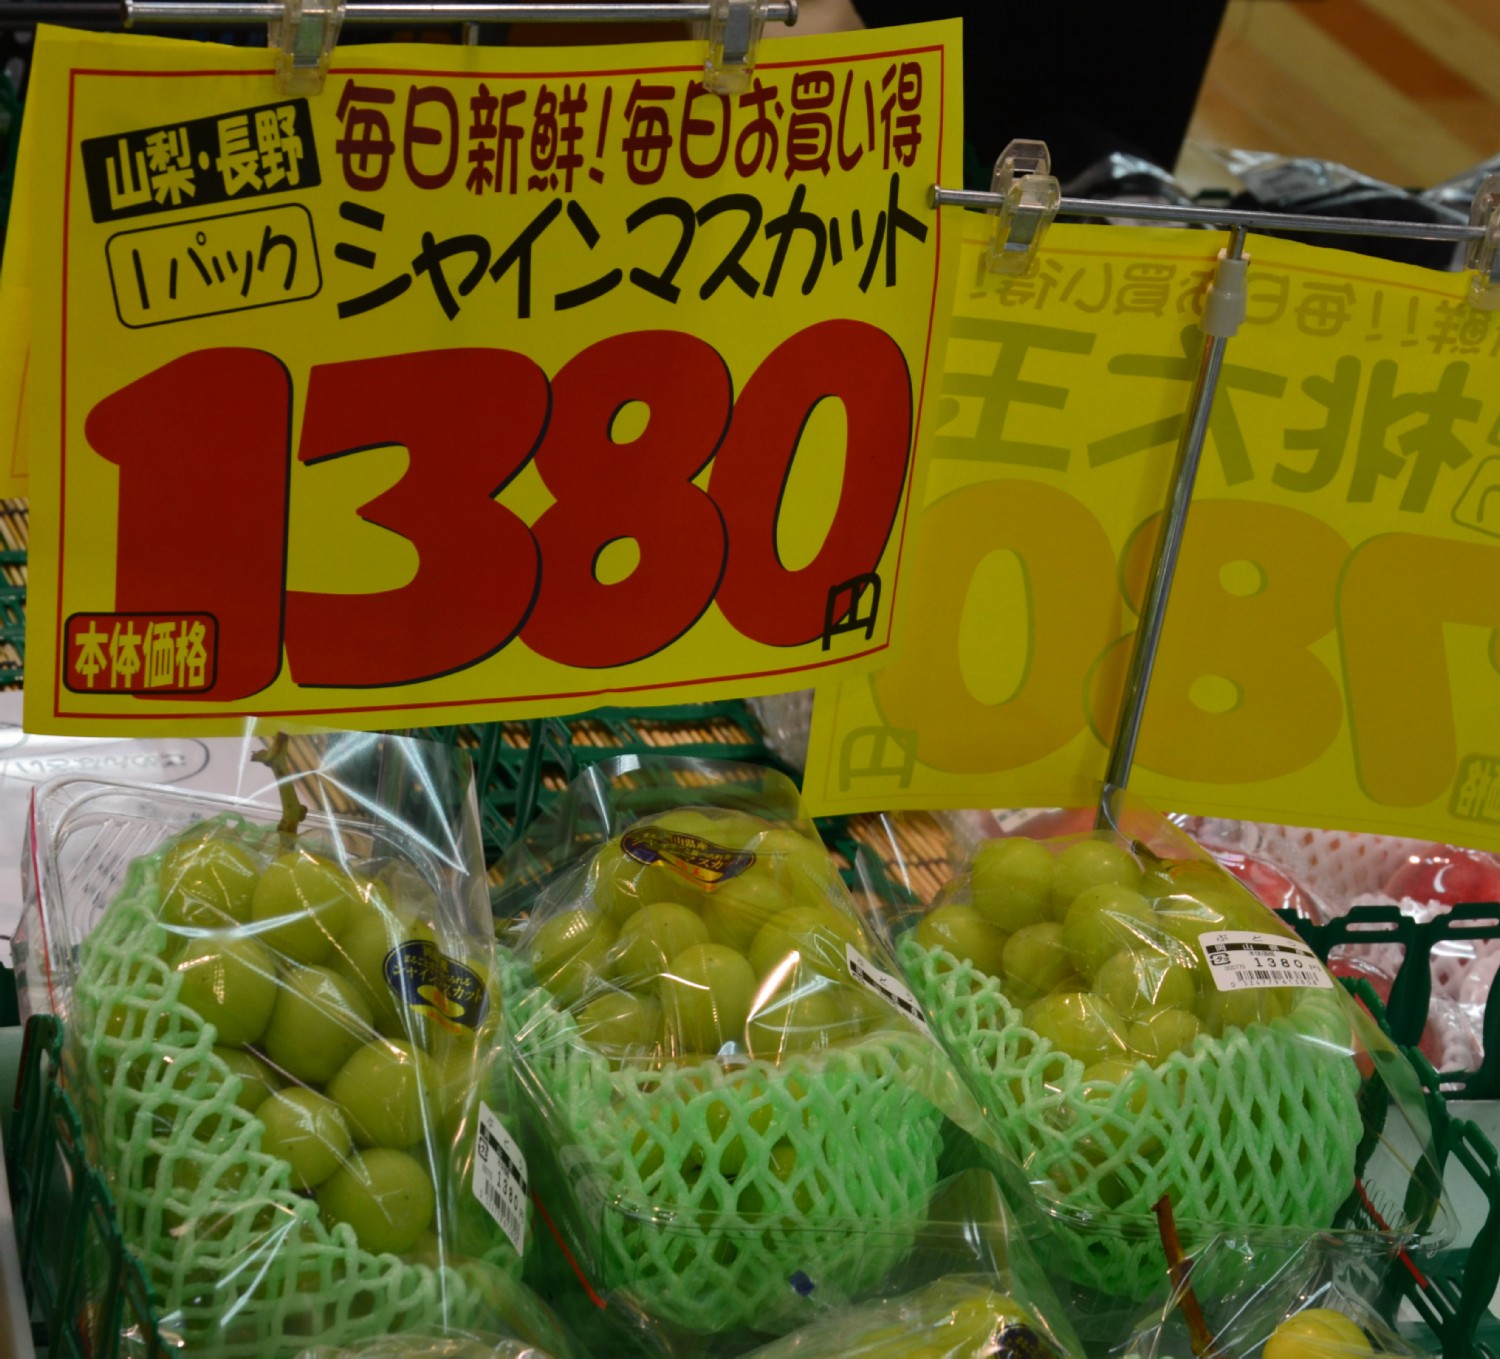 egy gerezd szolo 1380 yen<br />= 12.2 Euro<br />= 3737 Ft.<br />= 54.3 Lej